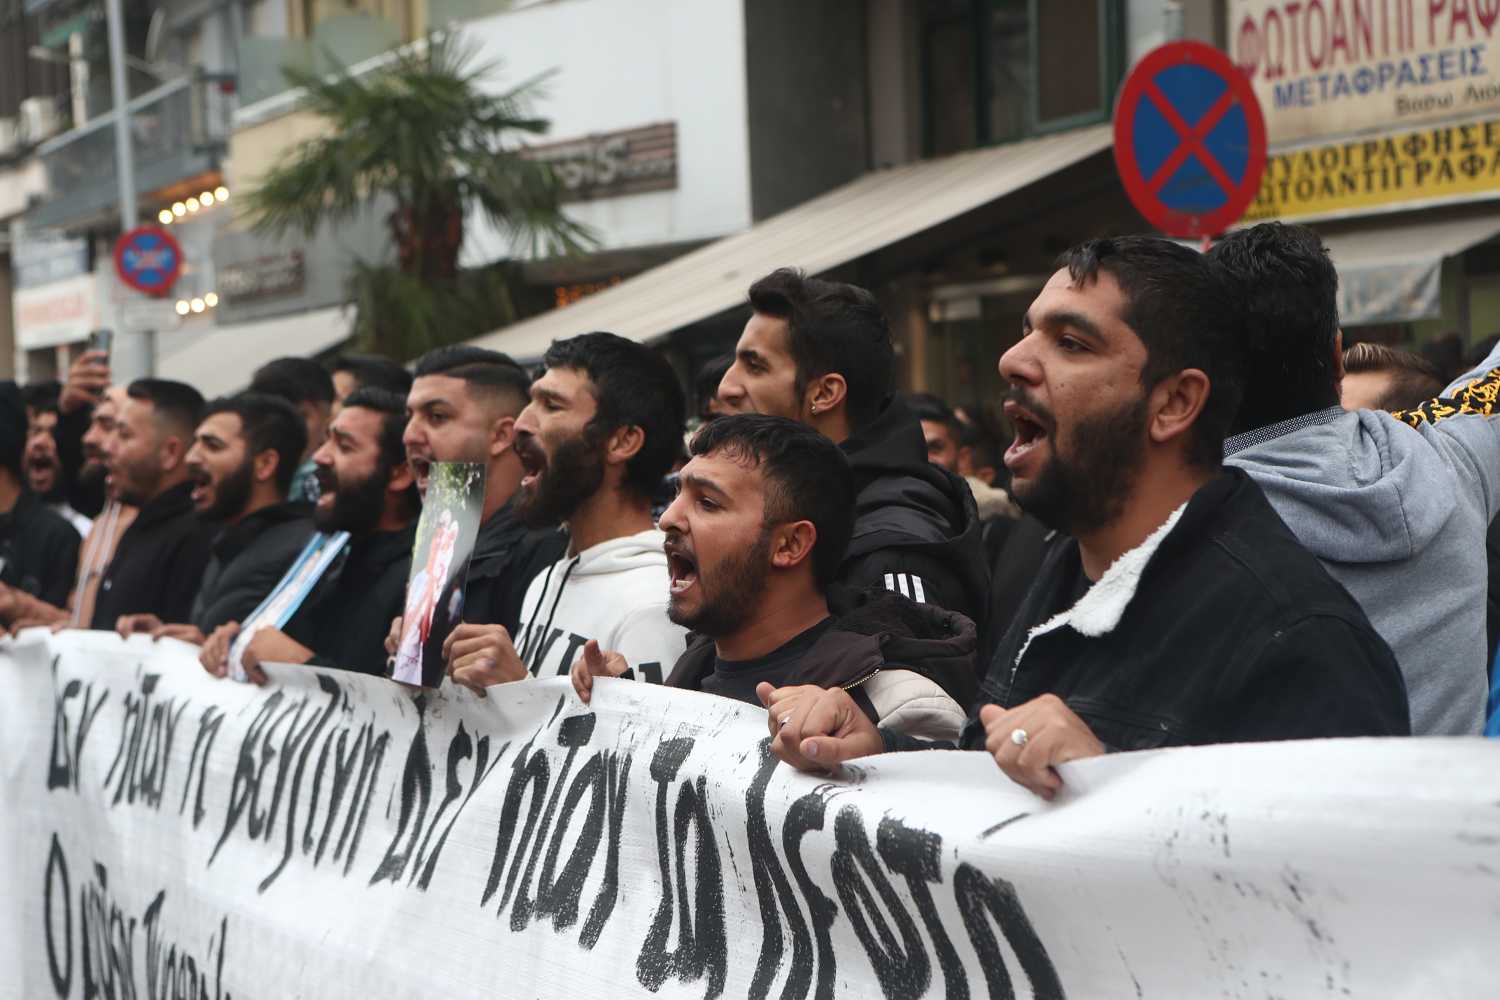 Θεσσαλονίκη: Ολοκληρώθηκε υπό άκρα μυστικότητα η απολογία του αστυνομικού